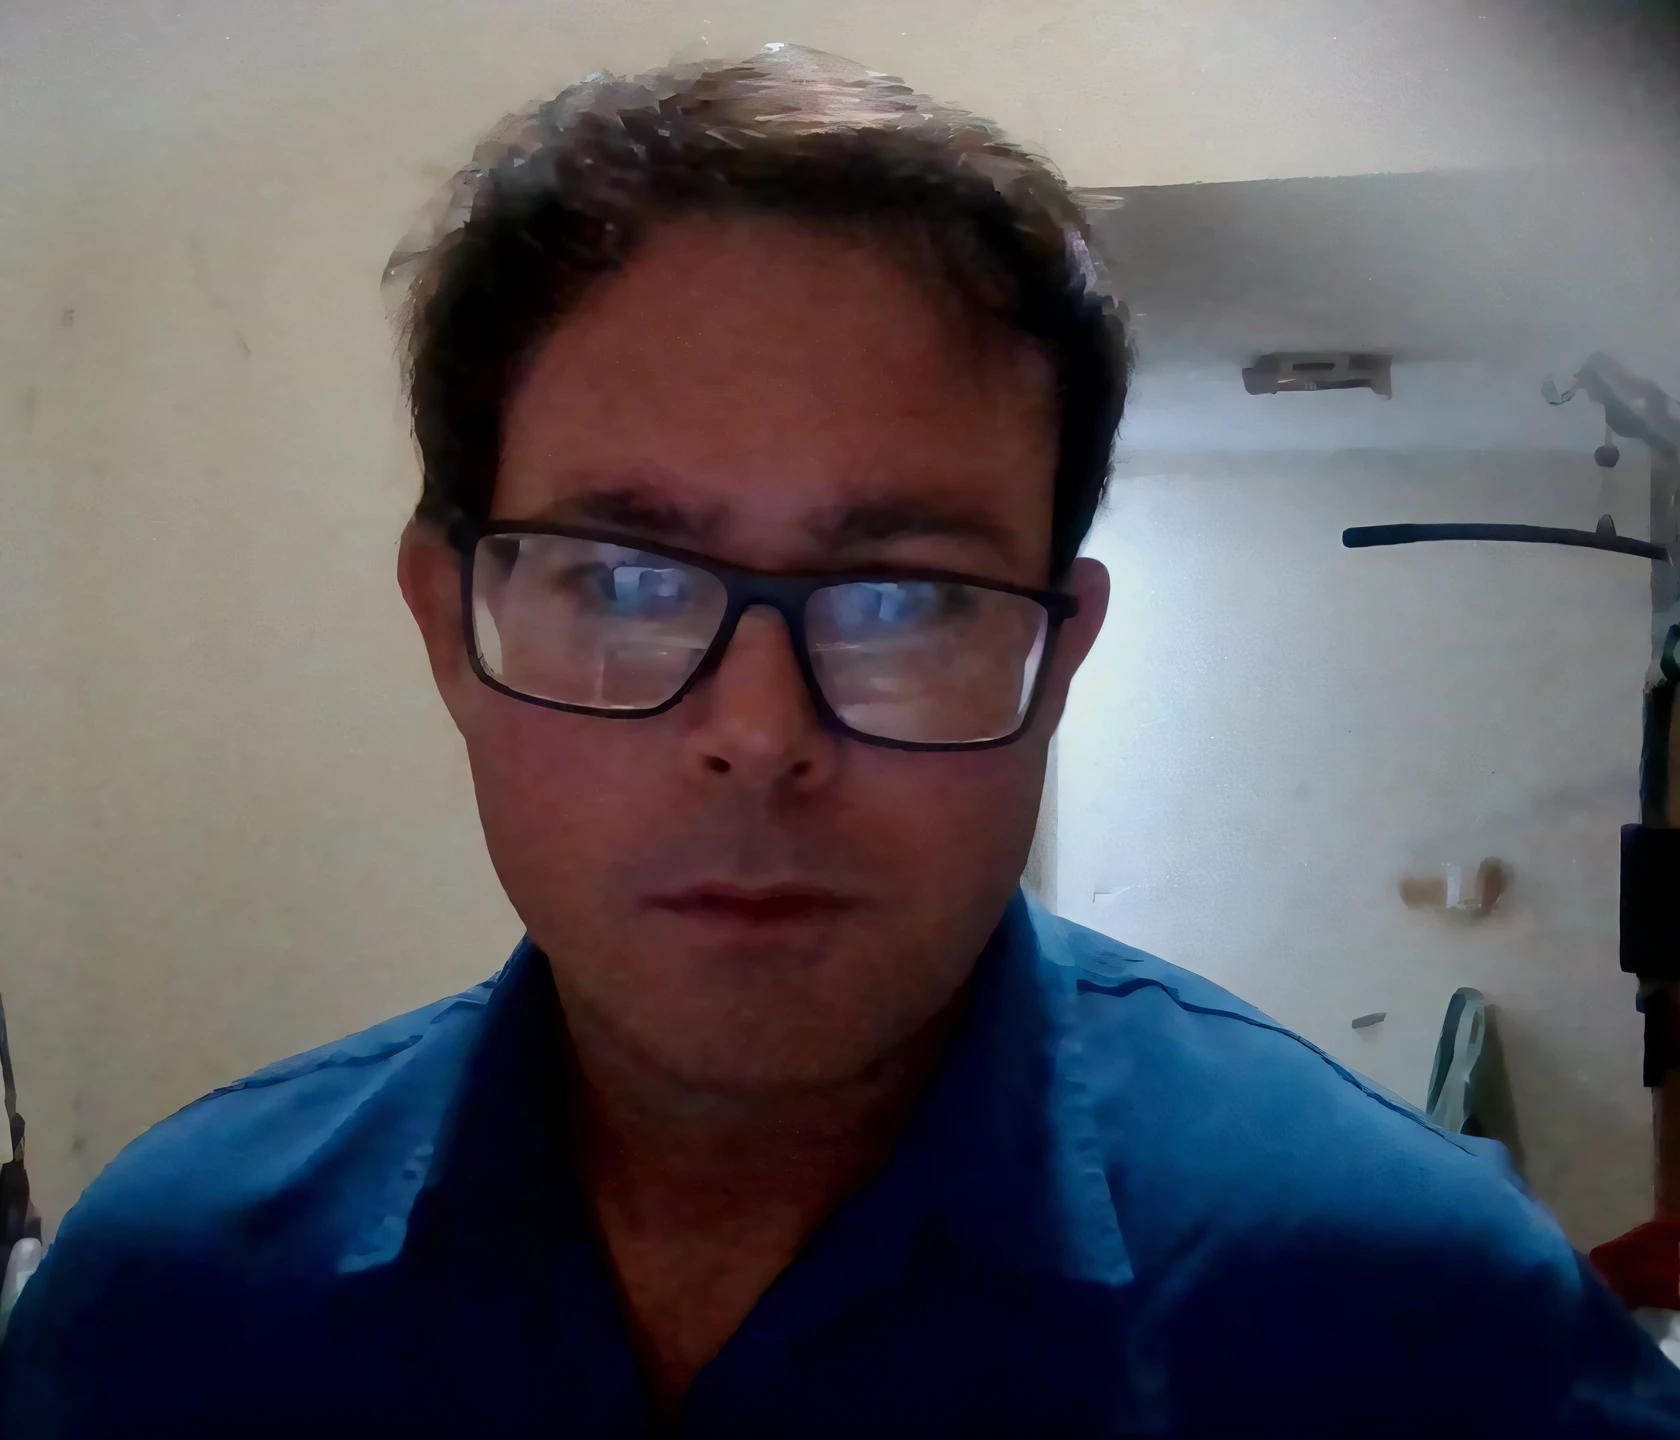 il y a un homme qui porte des lunettes et une chemise bleue, environ 3 à 5 ans, avec un léger chaume, David Ríos Ferreira, chêne icaro, avec des lunettes ringardes et une barbiche, homme de 4 0 ans, avec des lunettes et une barbiche, (38 ans), Photographie selfie 8k, selfie d&#39;un homme, homme à lunettes, 38 ans